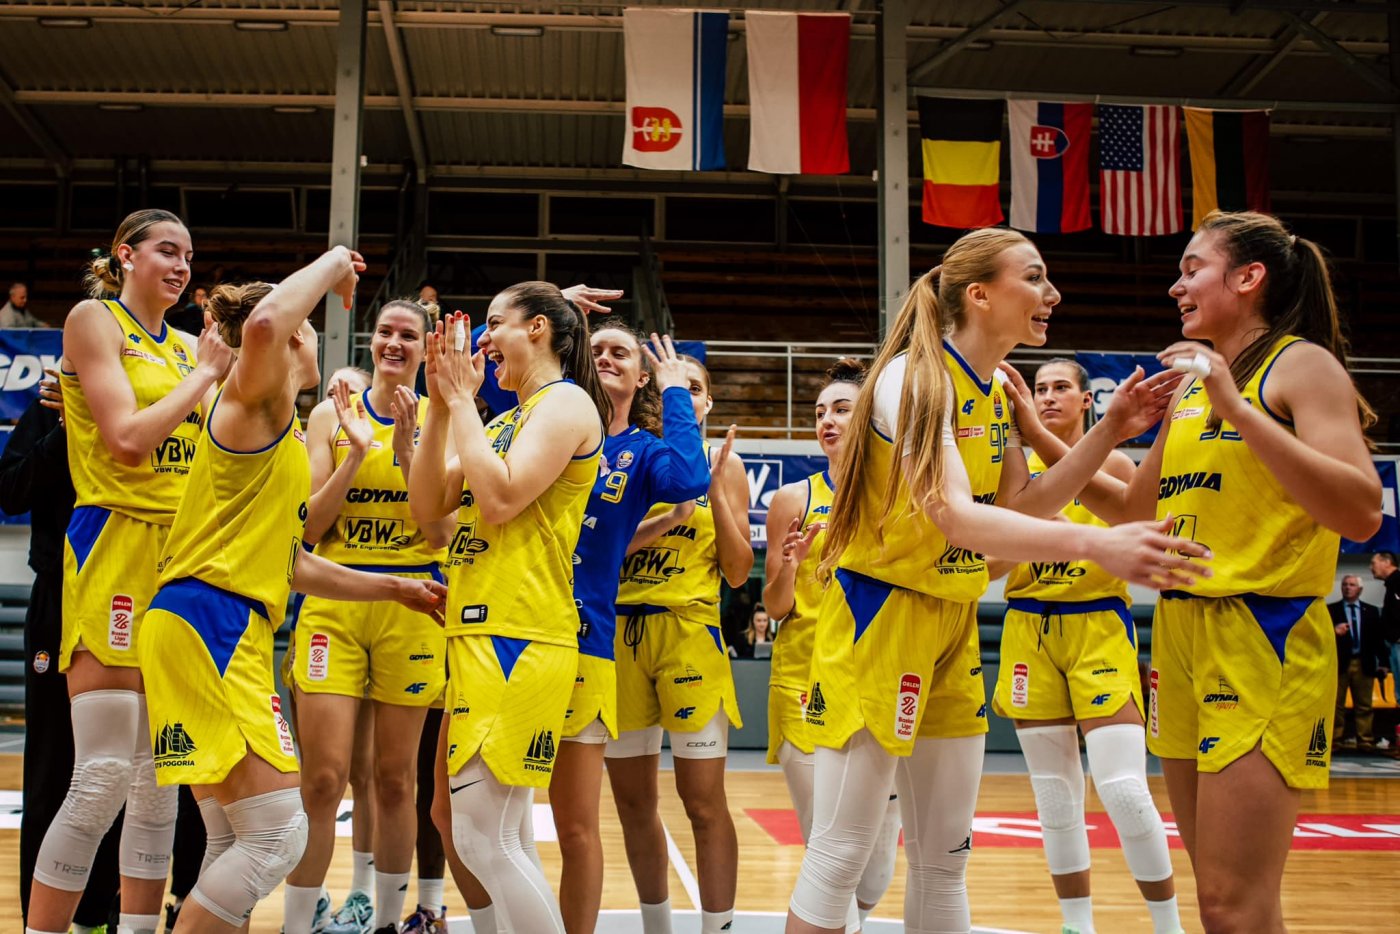 koszykarki żeńskiego klubu VBW Arki Gdynia w trakcie meczu Orlen Basket Ligi Kobiet.